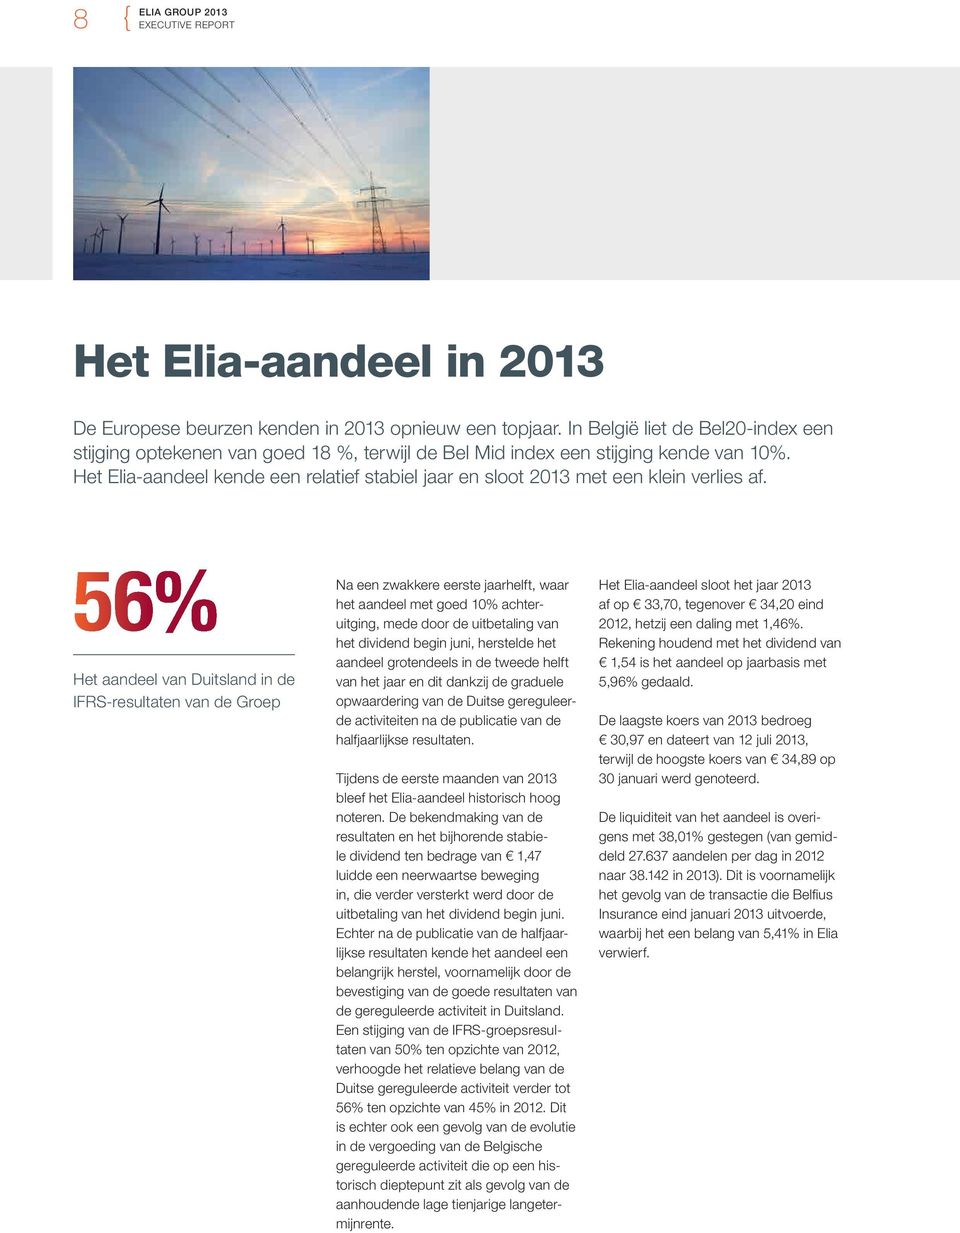 Het Elia-aandeel kende een relatief stabiel jaar en sloot 013 met een klein verlies af.